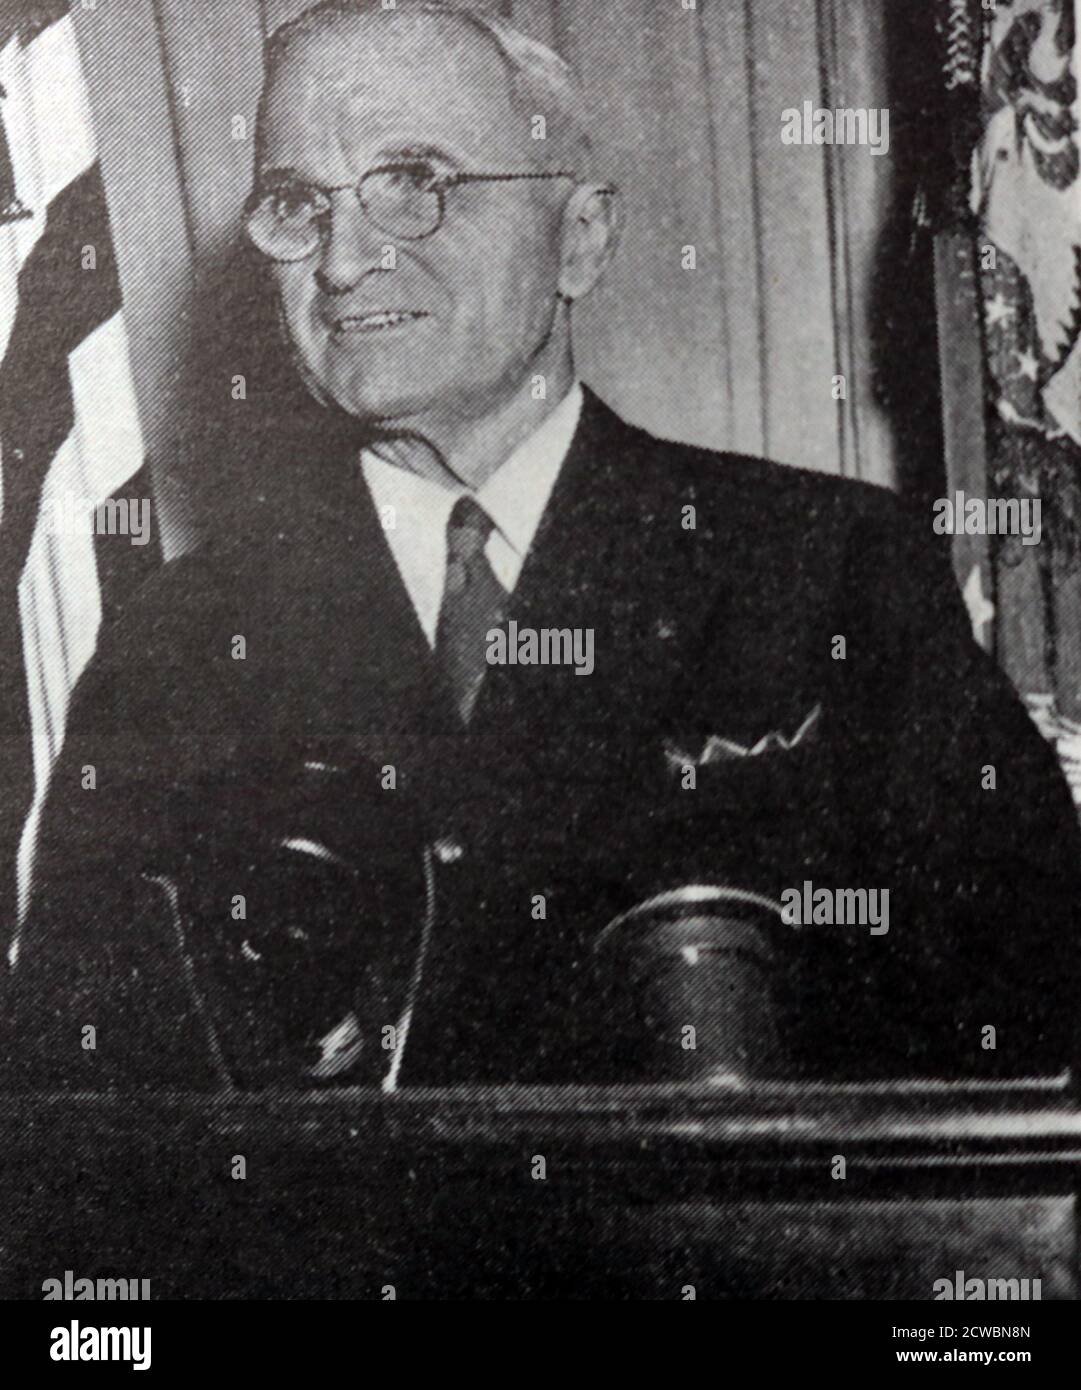 Fotografia in bianco e nero del presidente degli Stati Uniti Harry S. Truman (1884-1972) che dà un discorso a Washington. Foto Stock